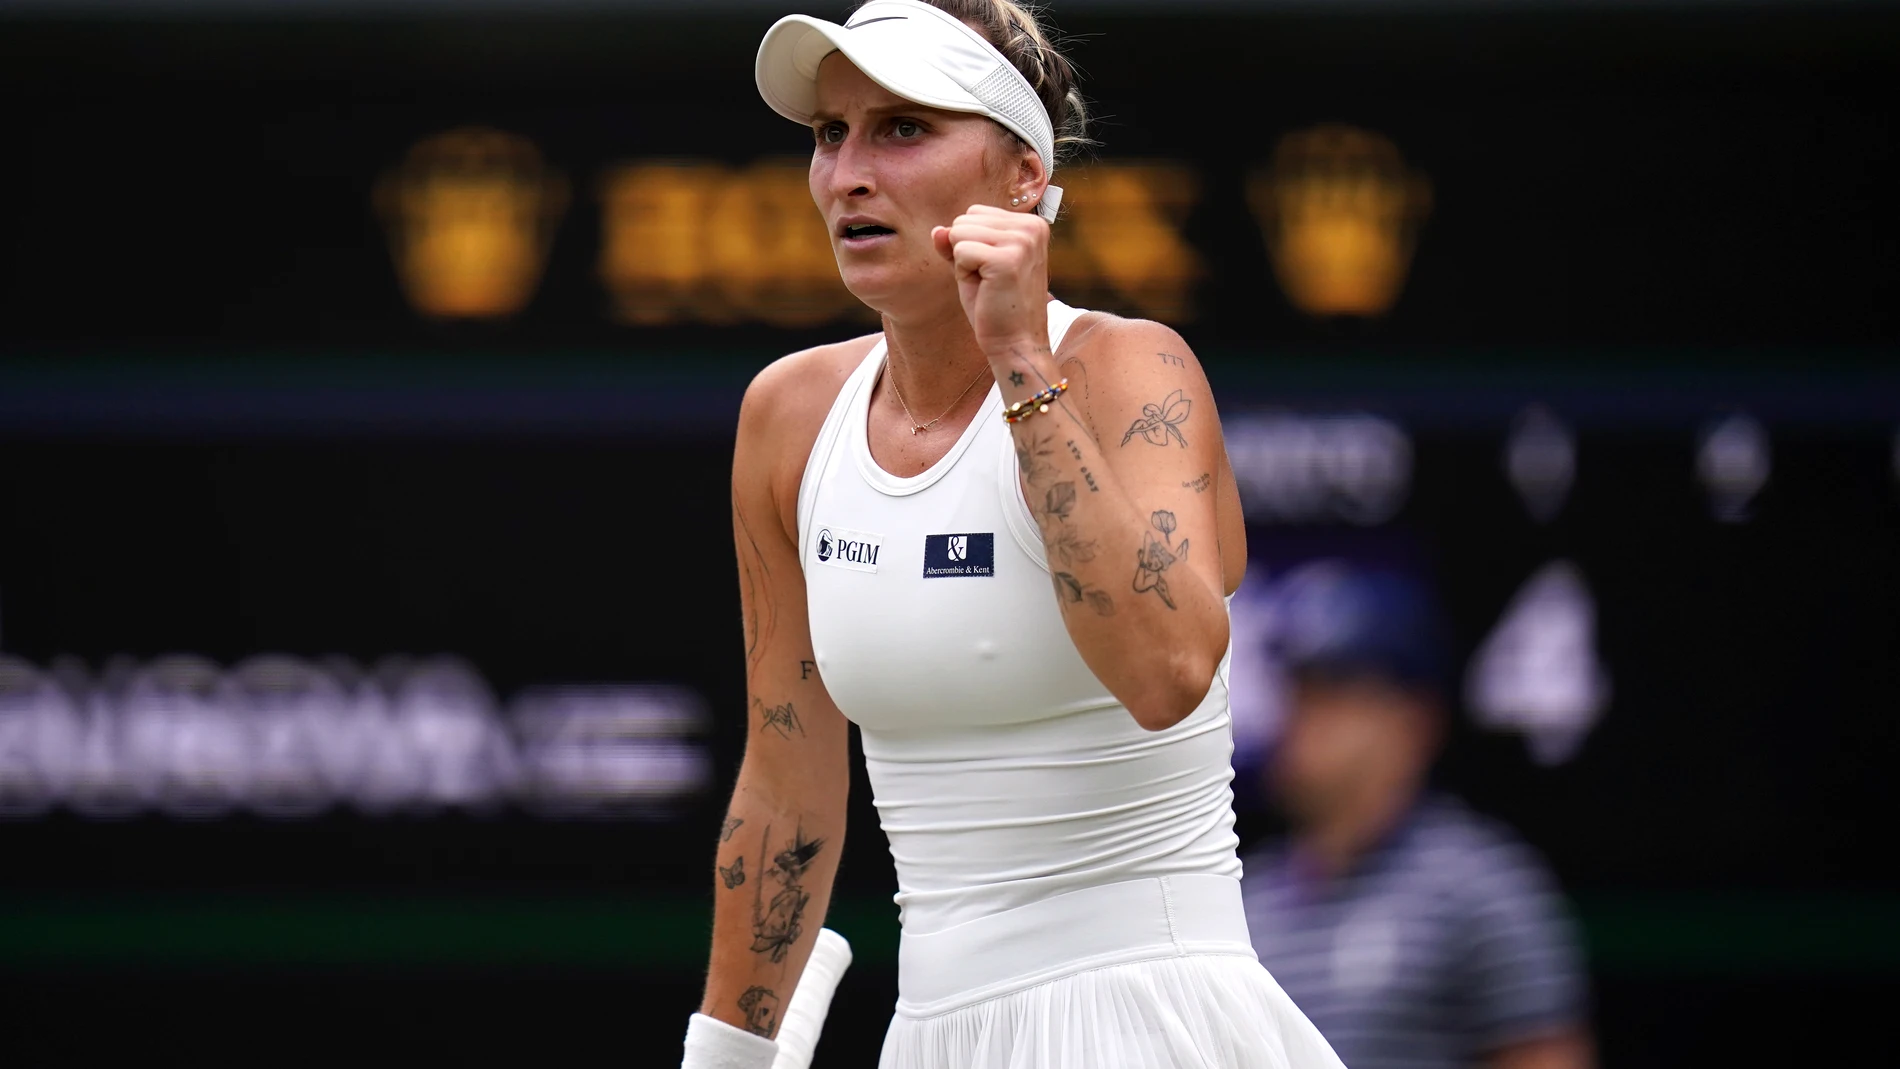 Tenis/Wimbledon.- Marketa Vondrousova logra su primer 'Grand Slam' en Wimbledon